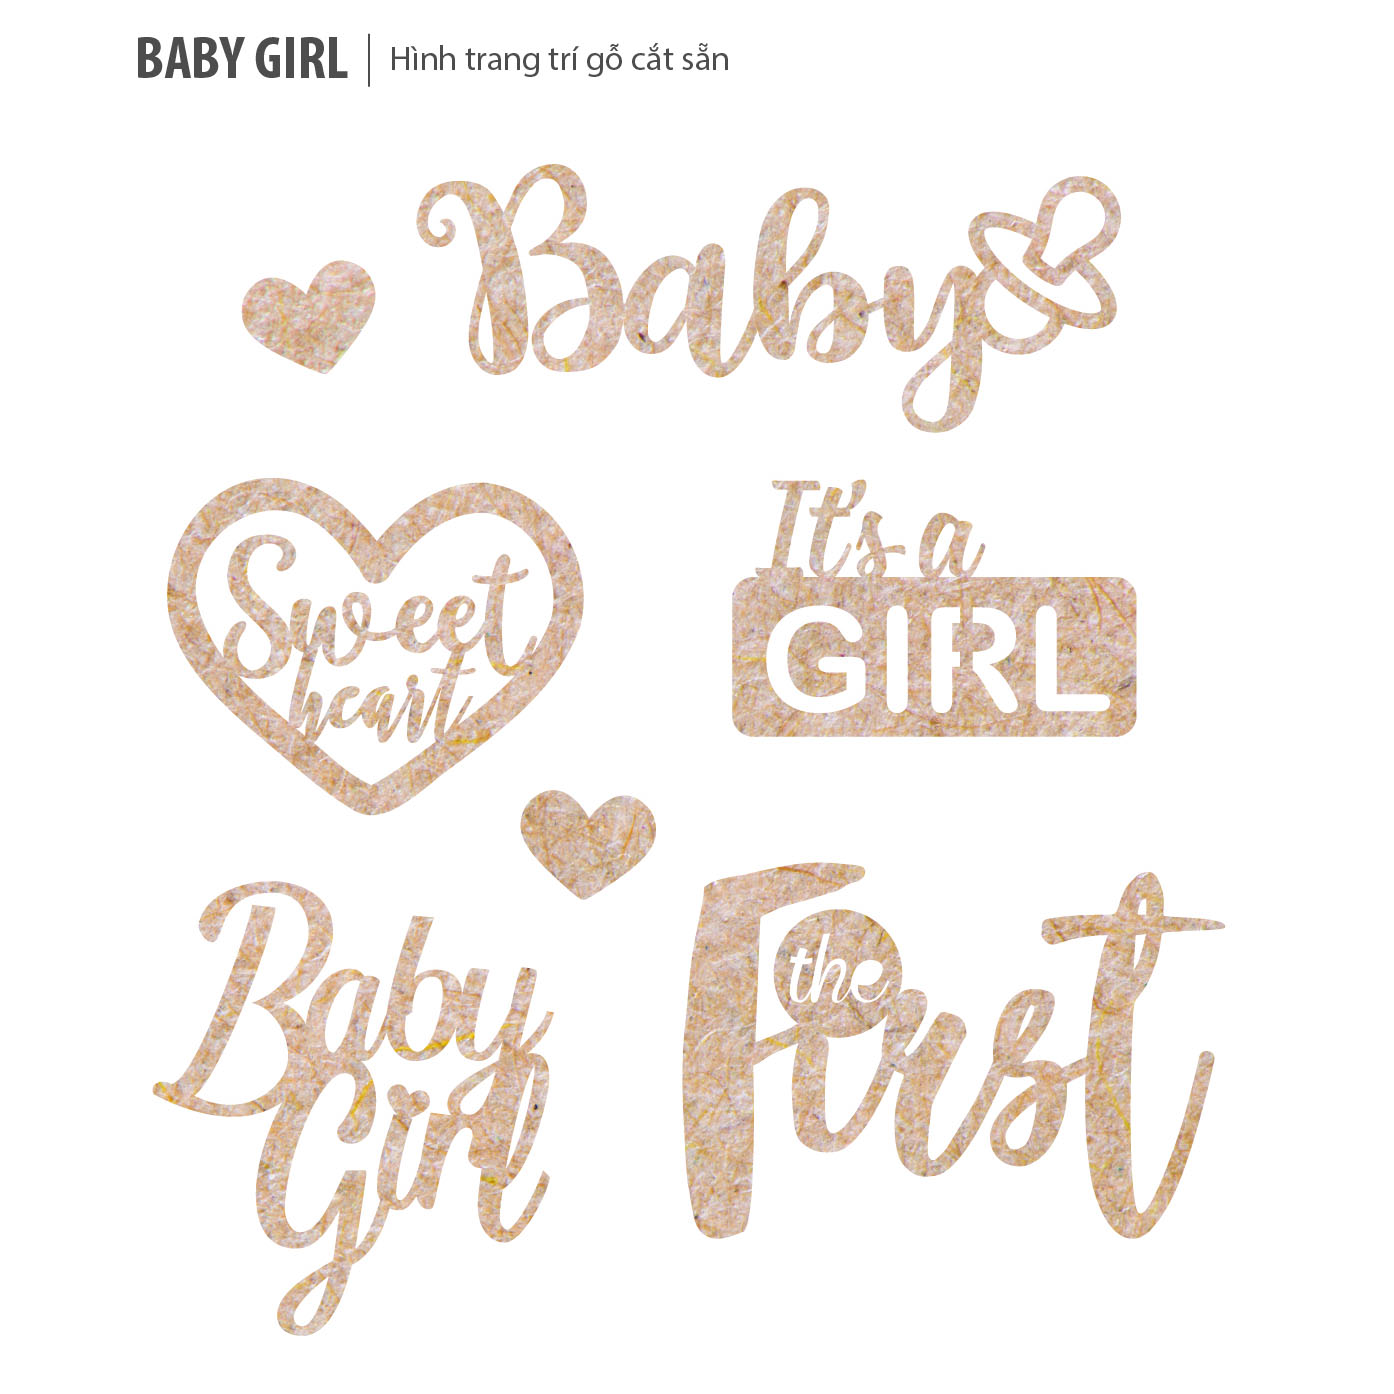 Baby Girl (Hình gỗ trang trí) - Fairy Corner